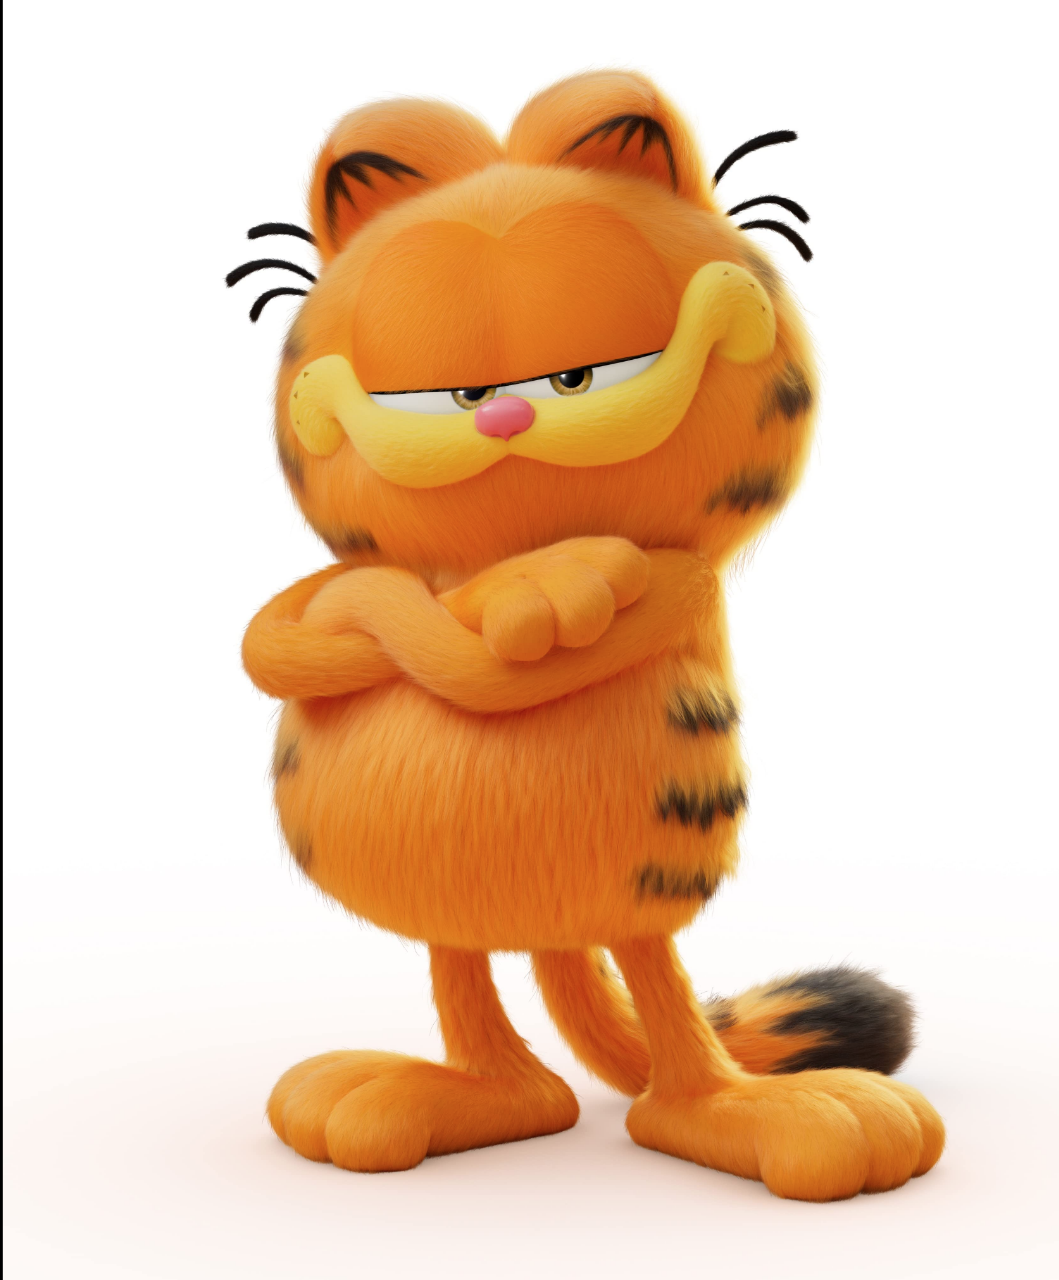 $!Cumple Garfield 45 años de existencia